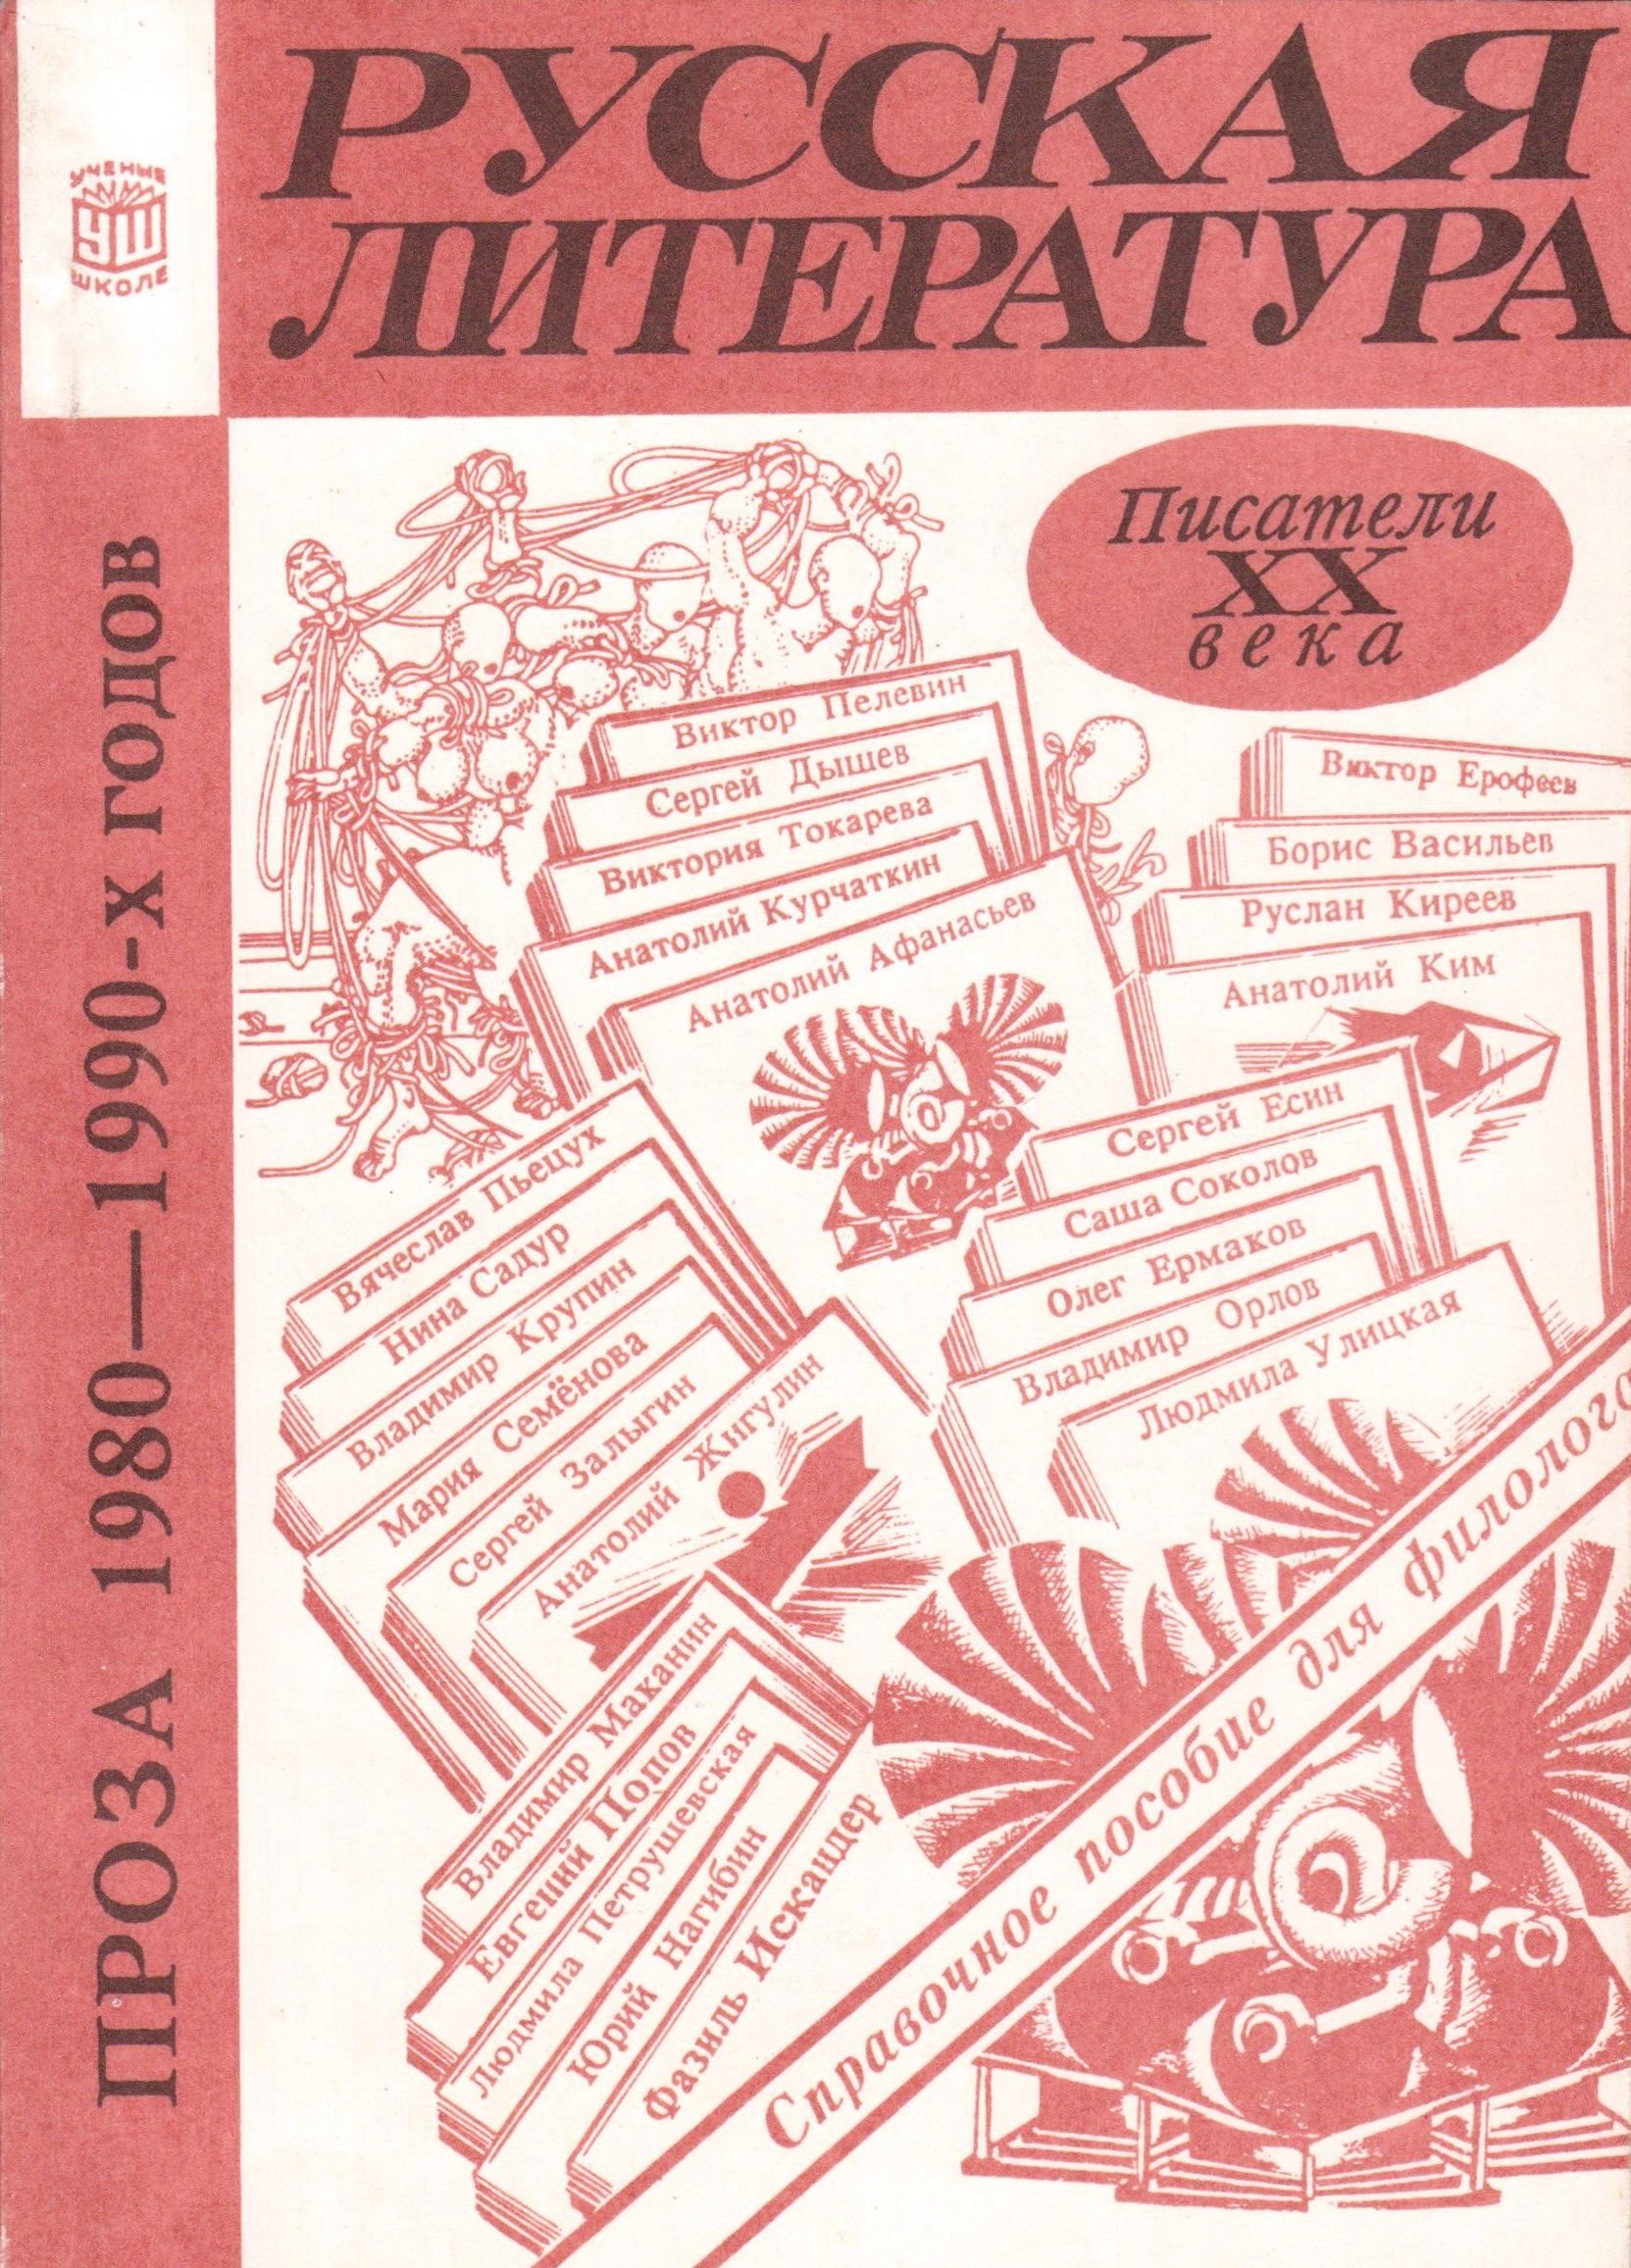 Книги 70 х. Литература 1990. Литература 1990 года. Литература 90-х годов. Литература 1990-х годов.